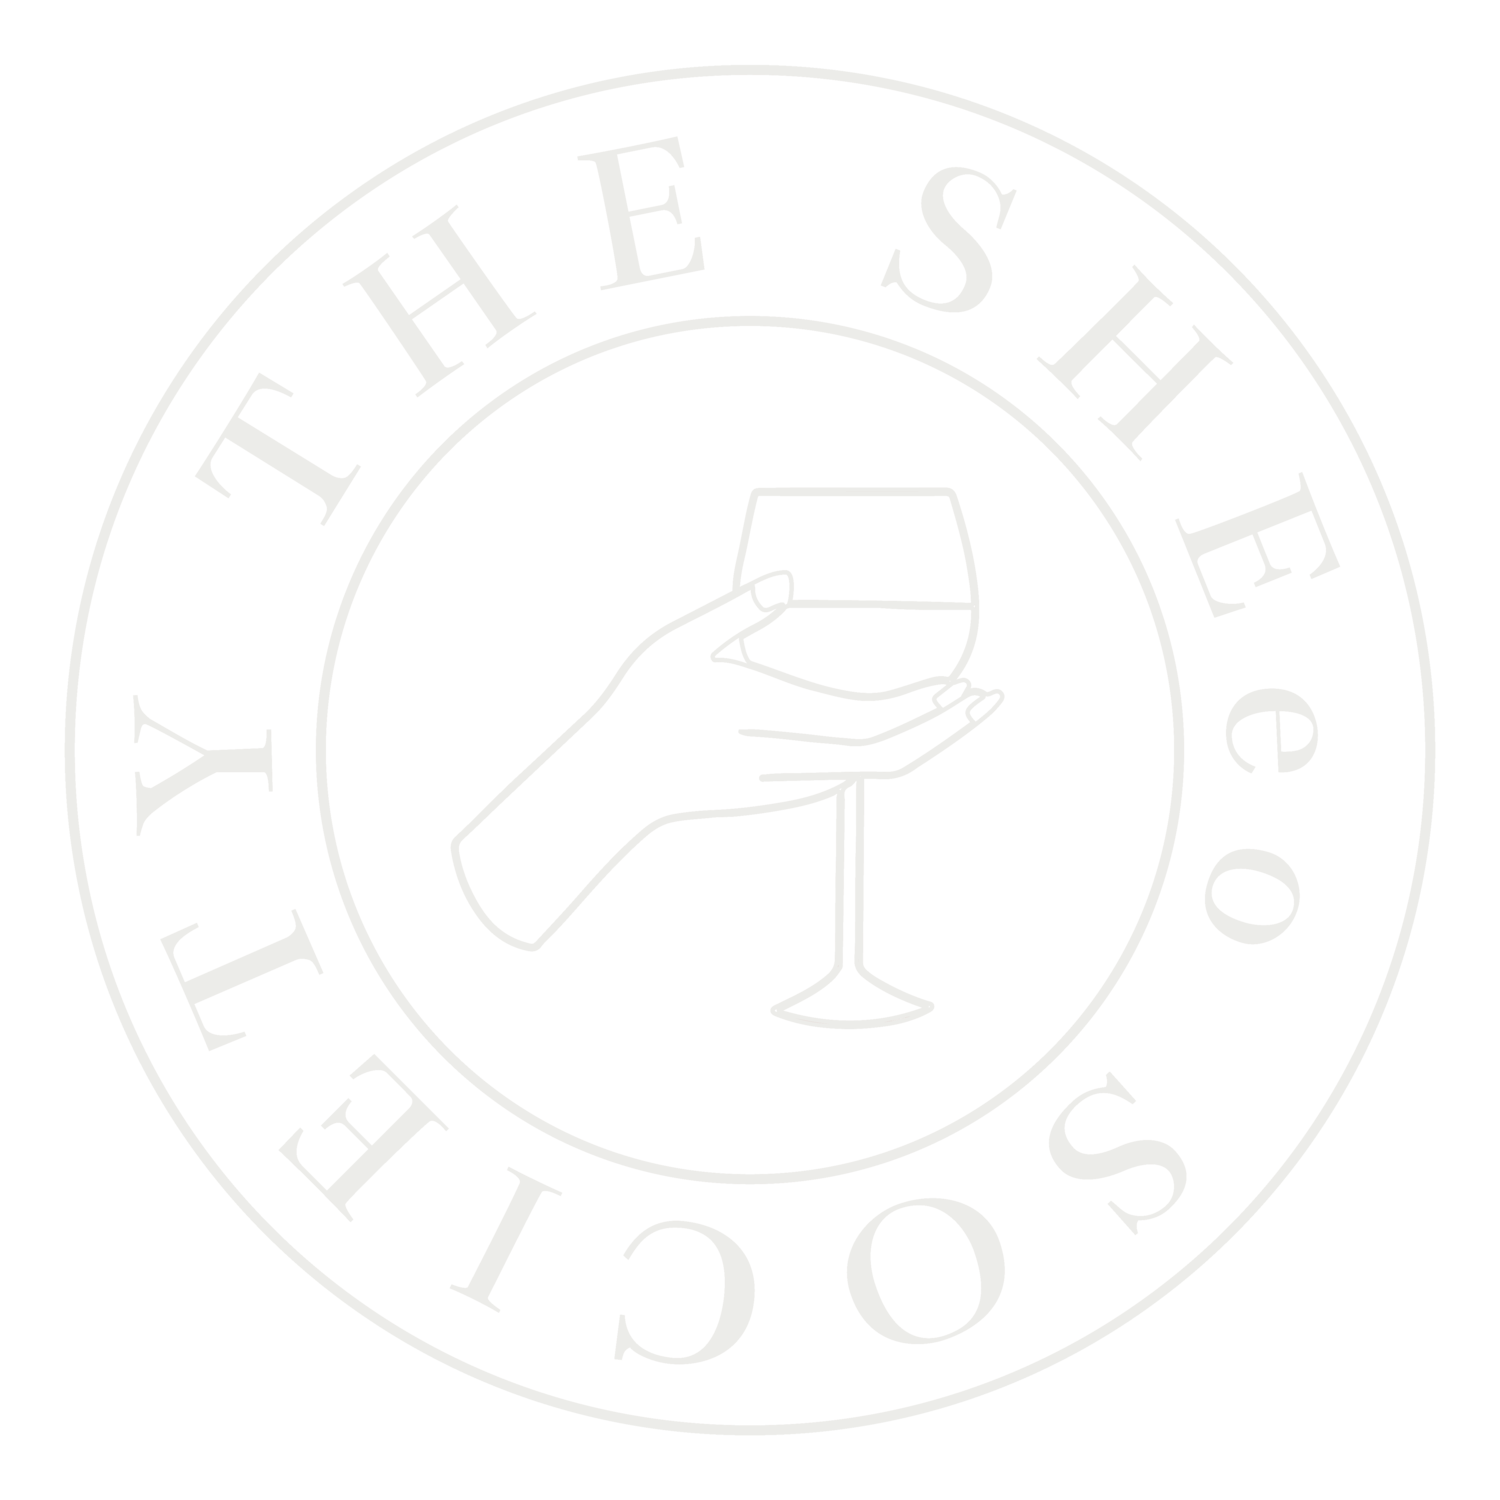 The SHEeo Society